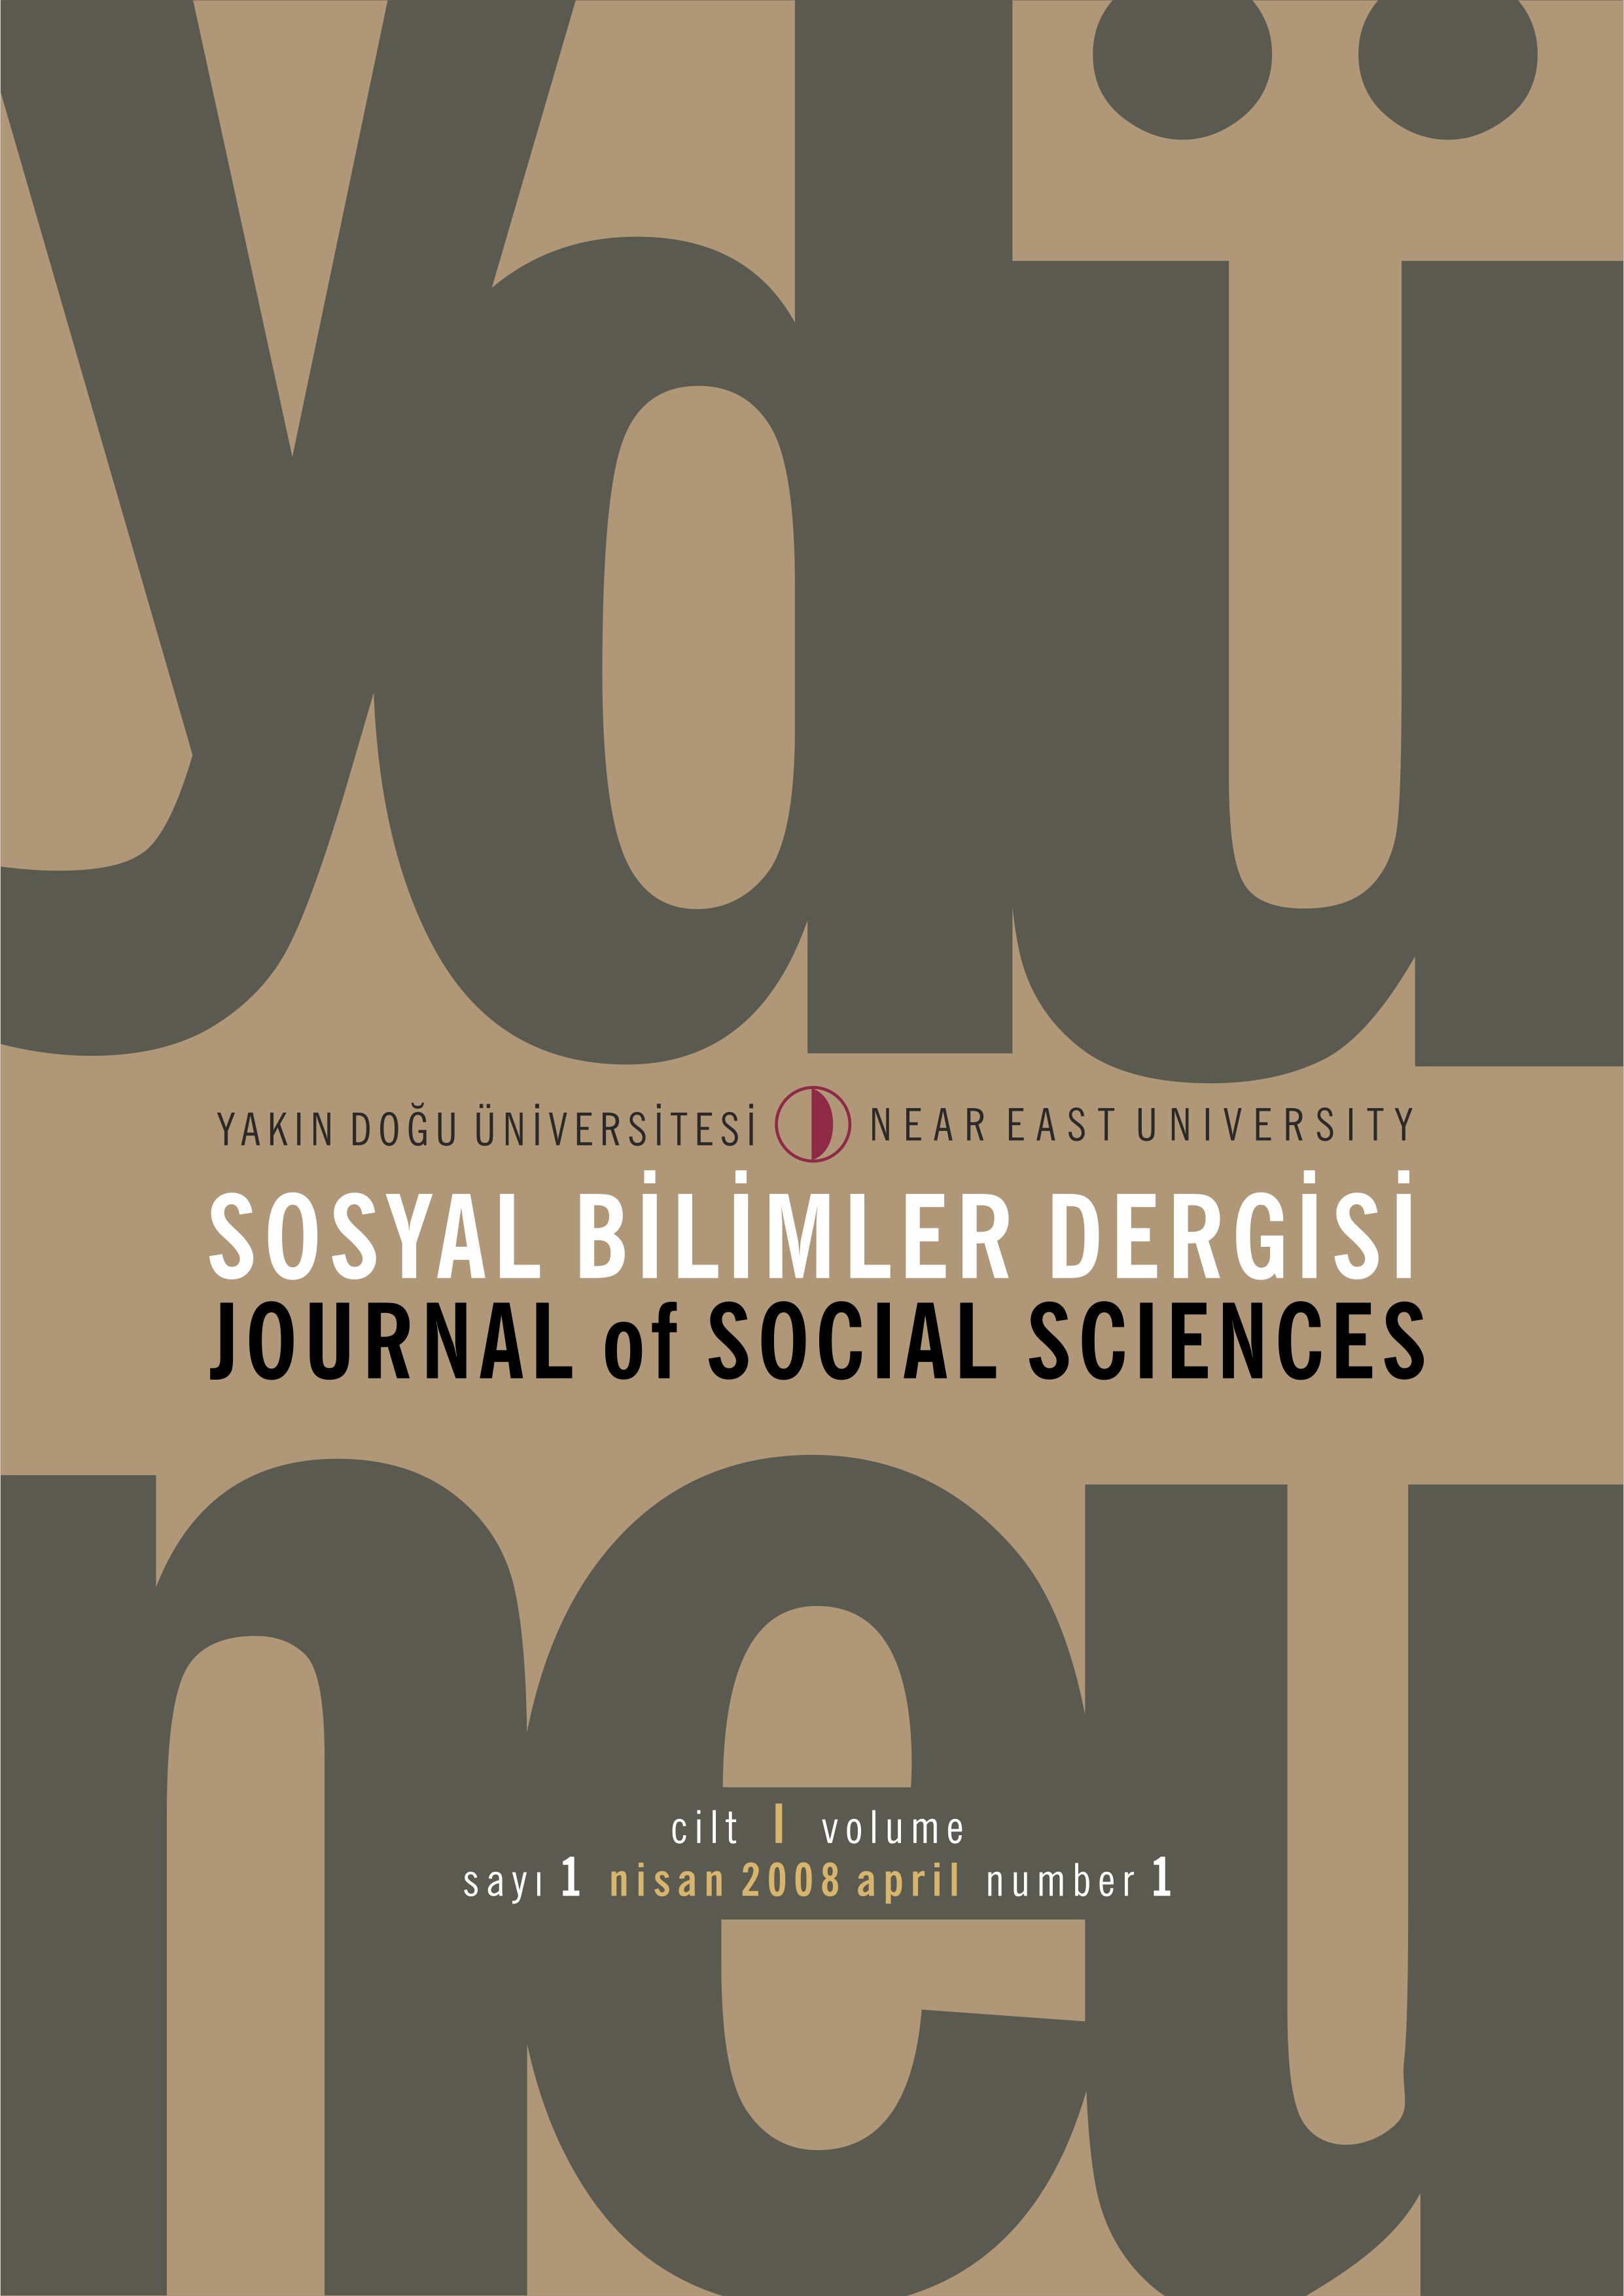 					Cilt 1 Sayı 1 (2008): Yakın Doğu Üniversitesi Sosyal Bilimler Dergisi Gör
				